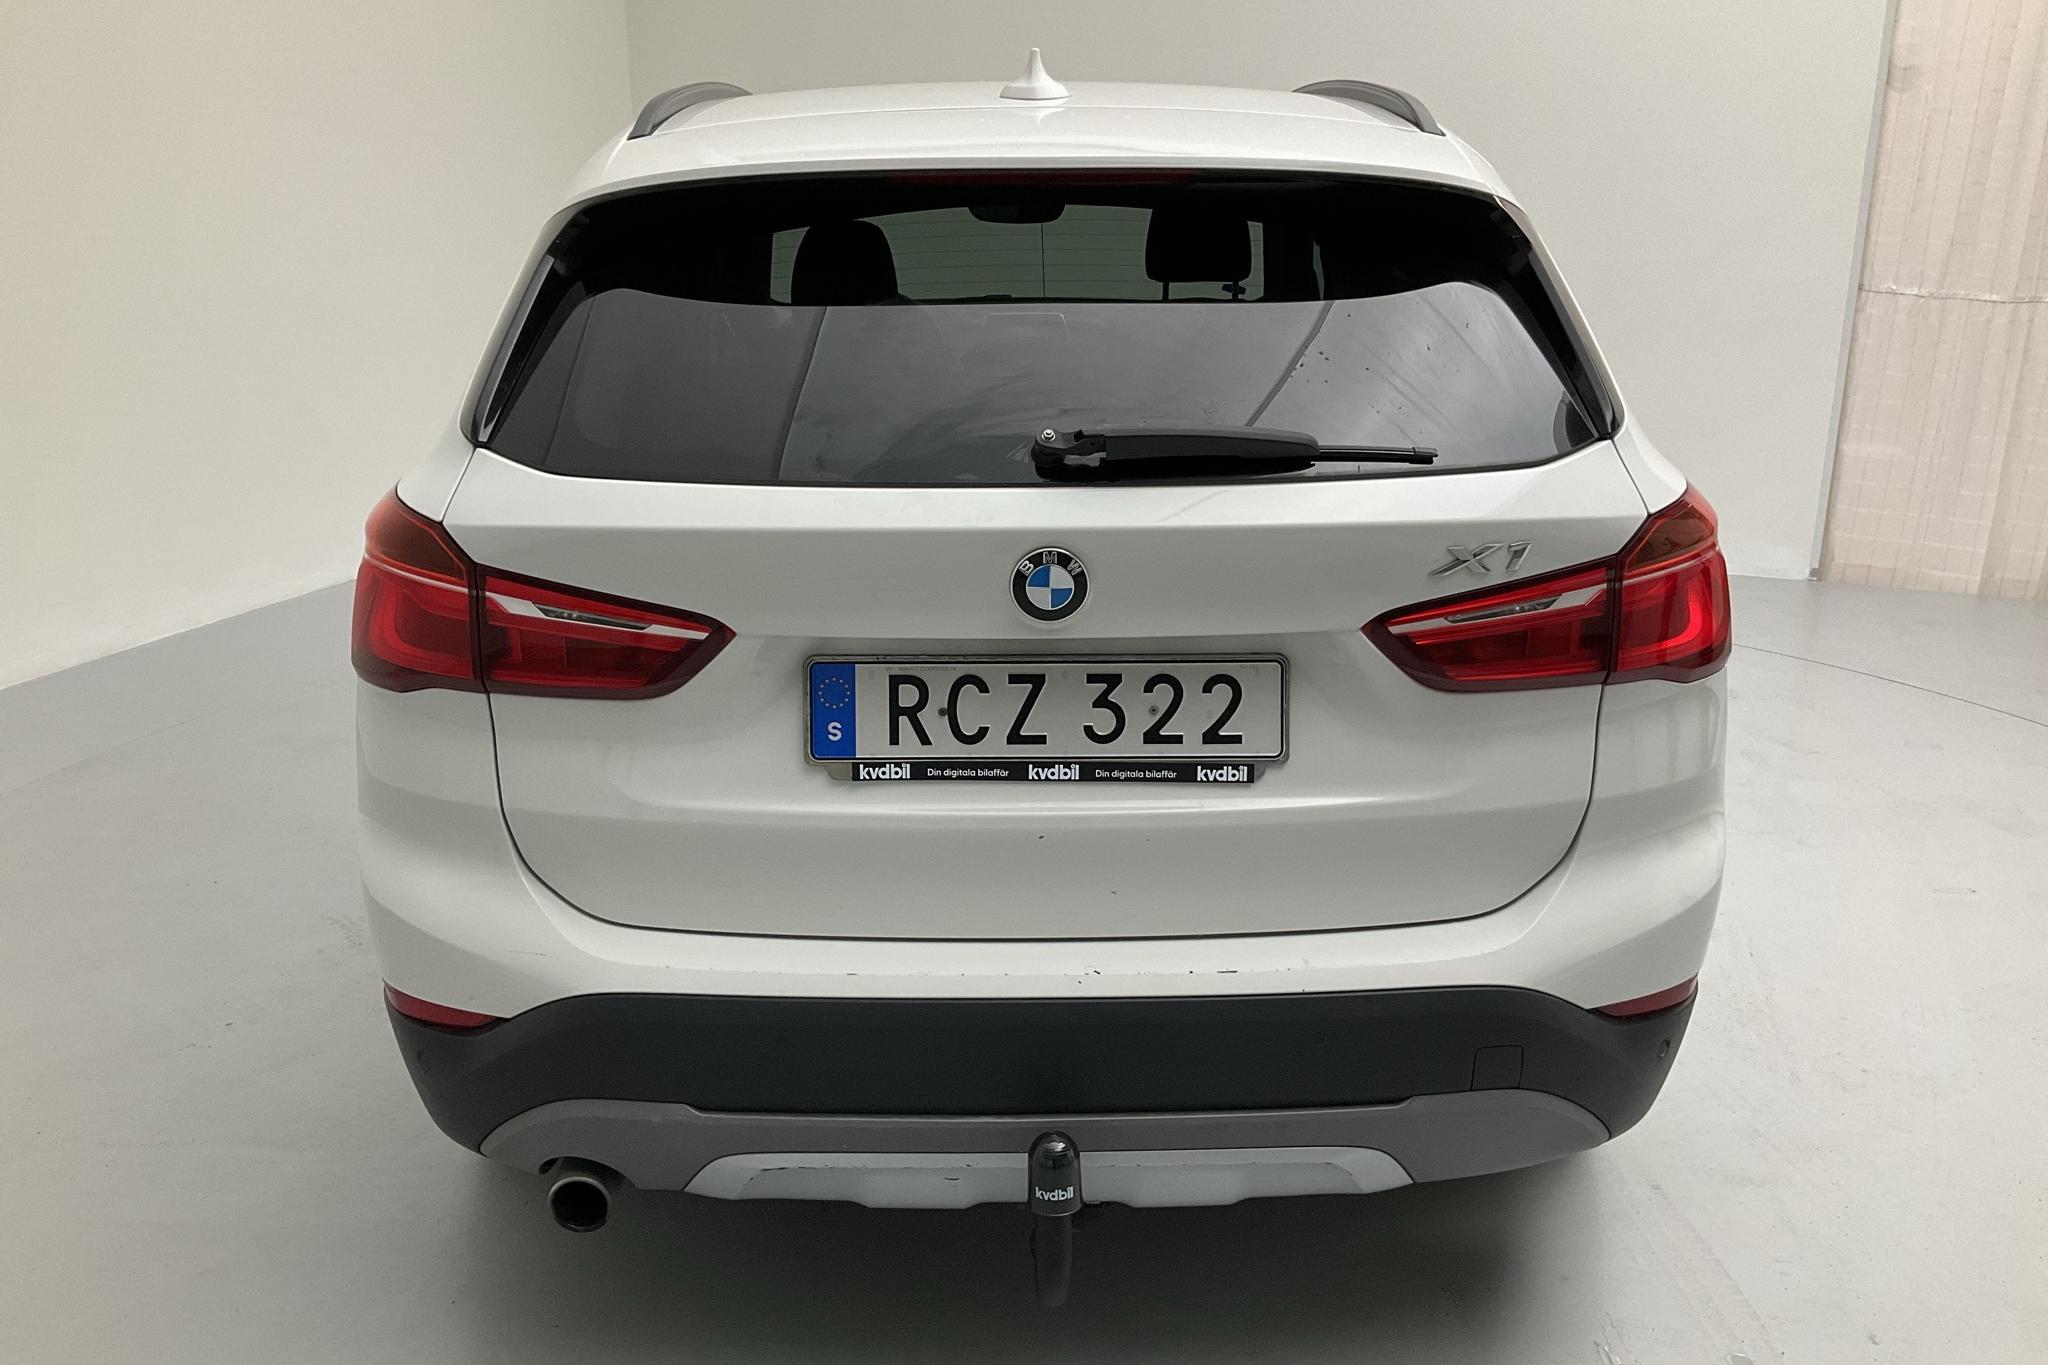 BMW X1 sDrive18d, F48 (150hk) - 96 820 km - Automatic - white - 2016